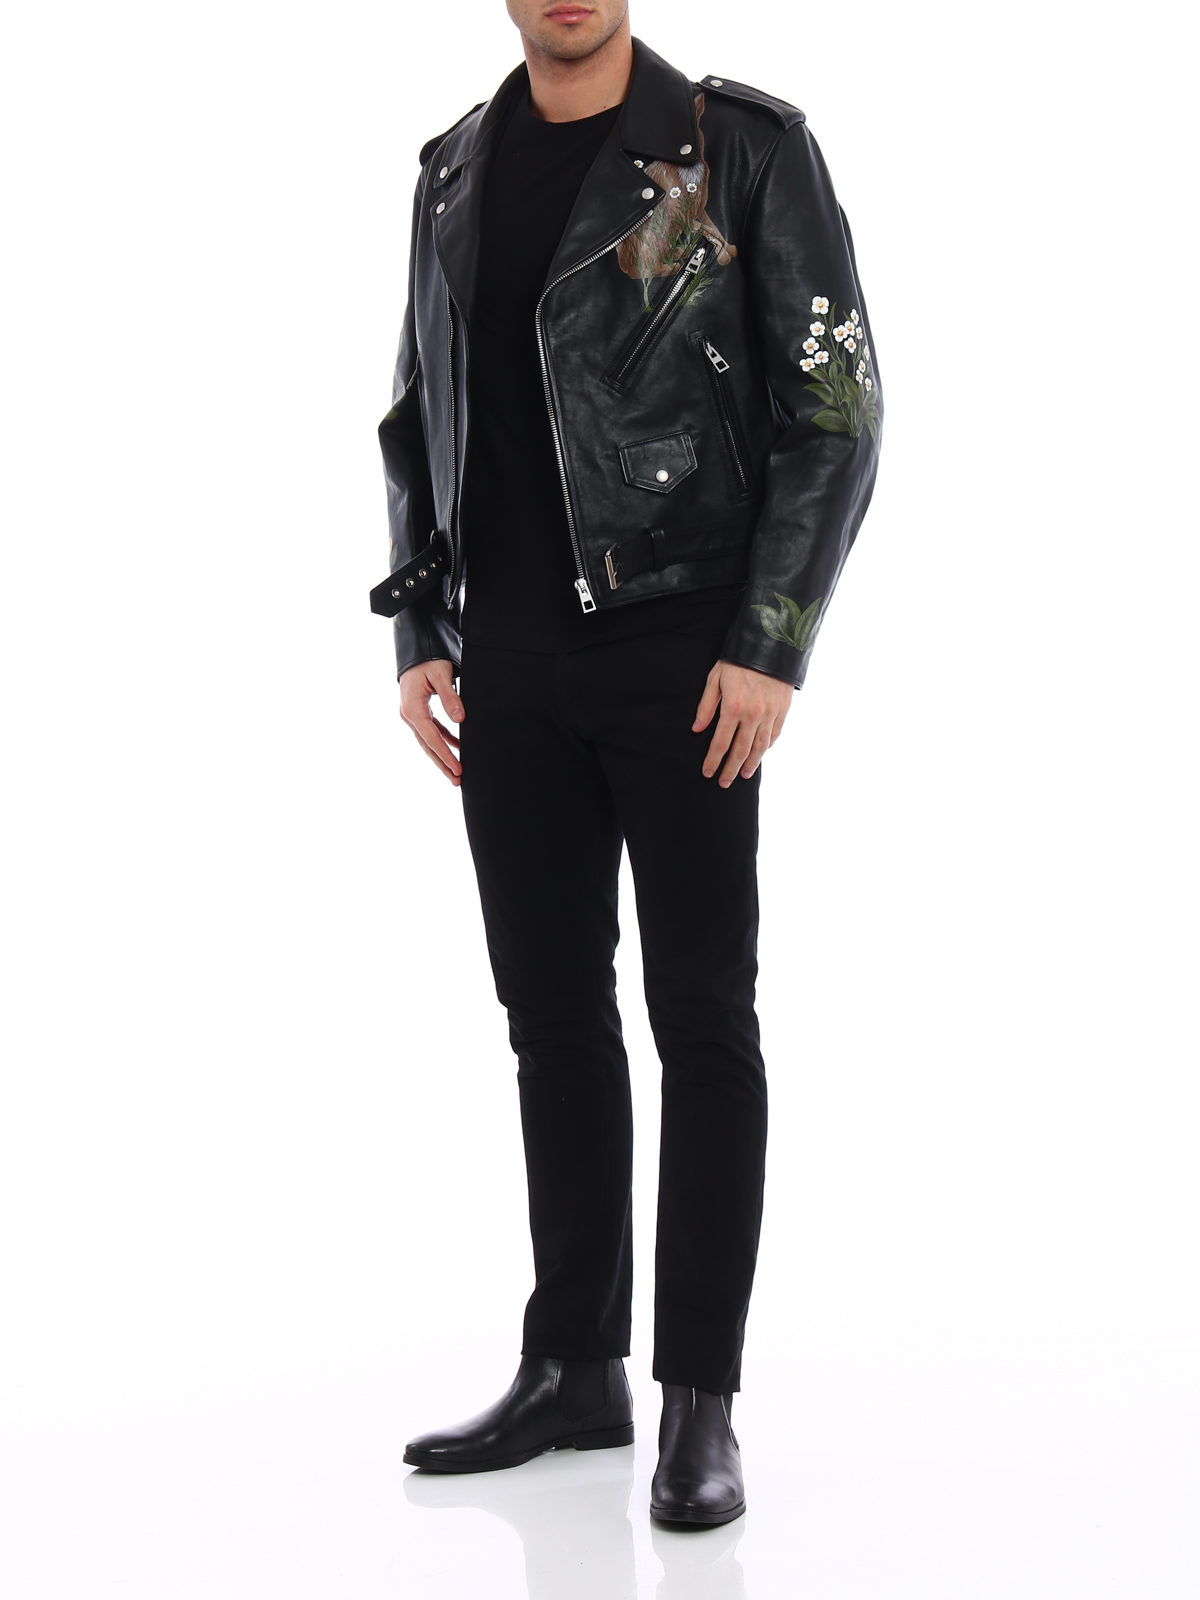 Leather jacket Loewe - Printed calfskin biker jacket - H1188160VU1100